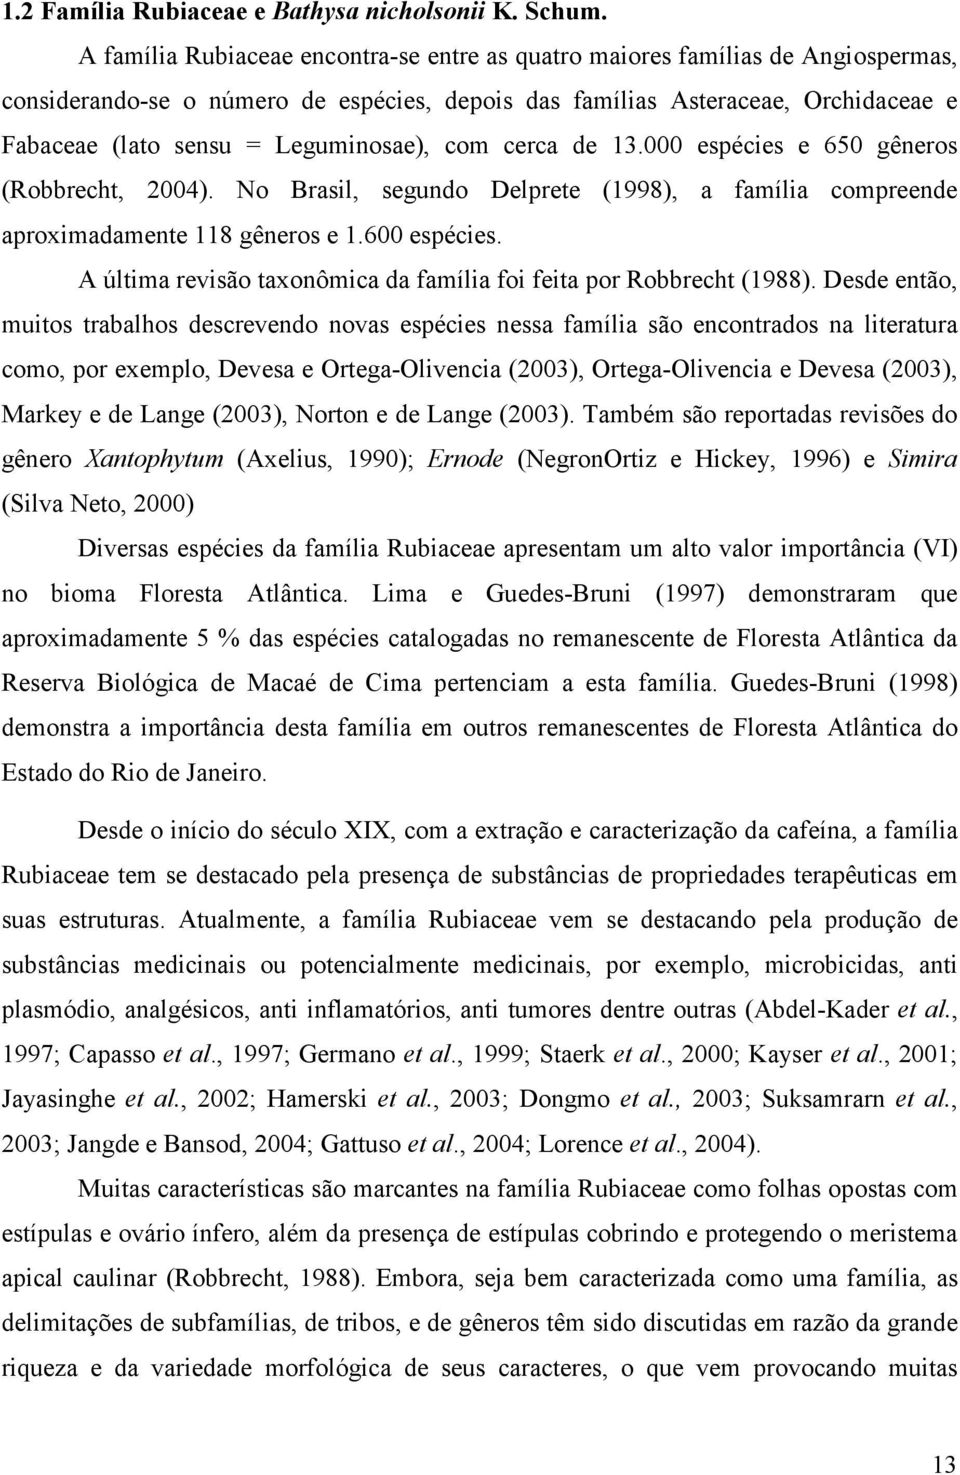 Leguminosae), com cerca de 13.000 espécies e 650 gêneros (Robbrecht, 2004). No Brasil, segundo Delprete (1998), a família compreende aproximadamente 118 gêneros e 1.600 espécies.